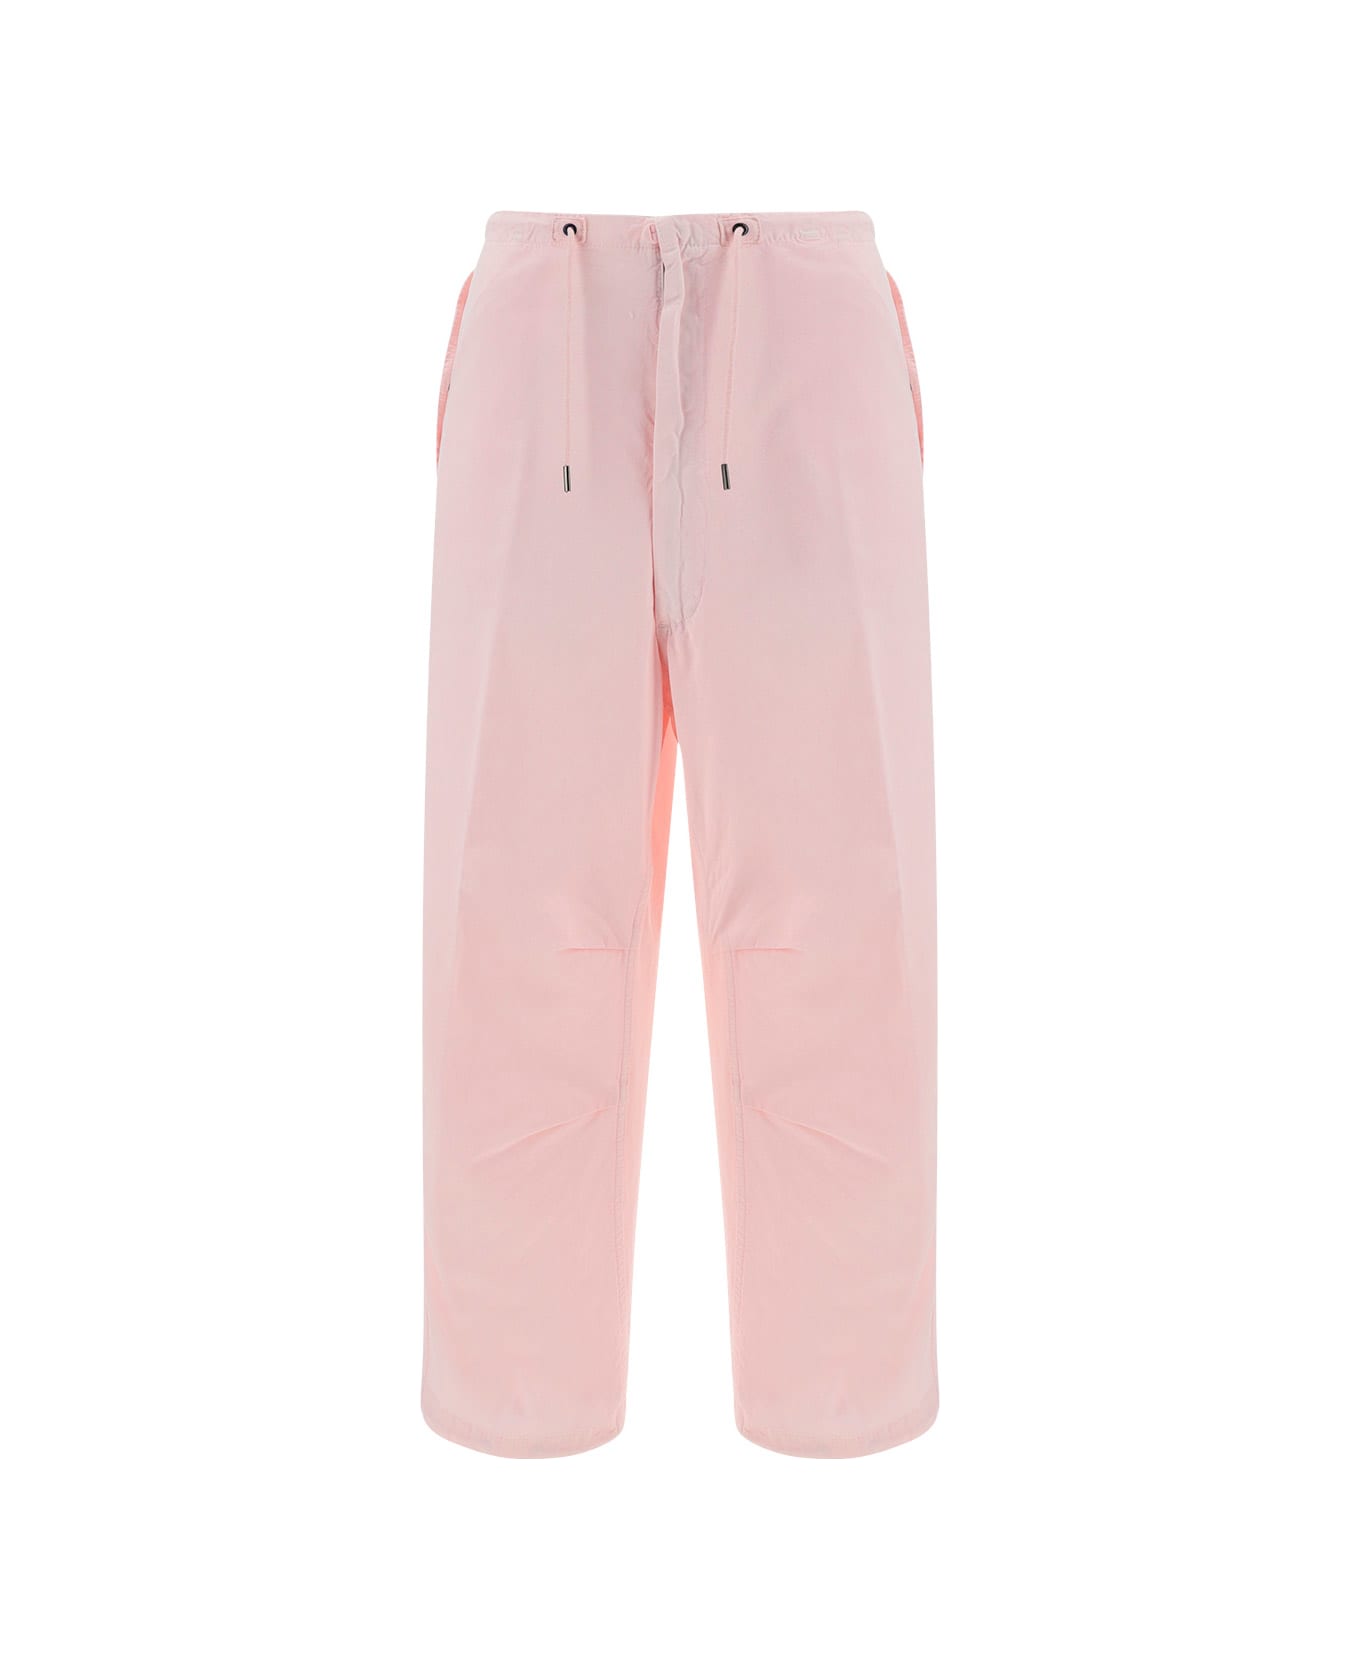 DARKPARK Blair Vintage Pants - Pwdp Powder Pink